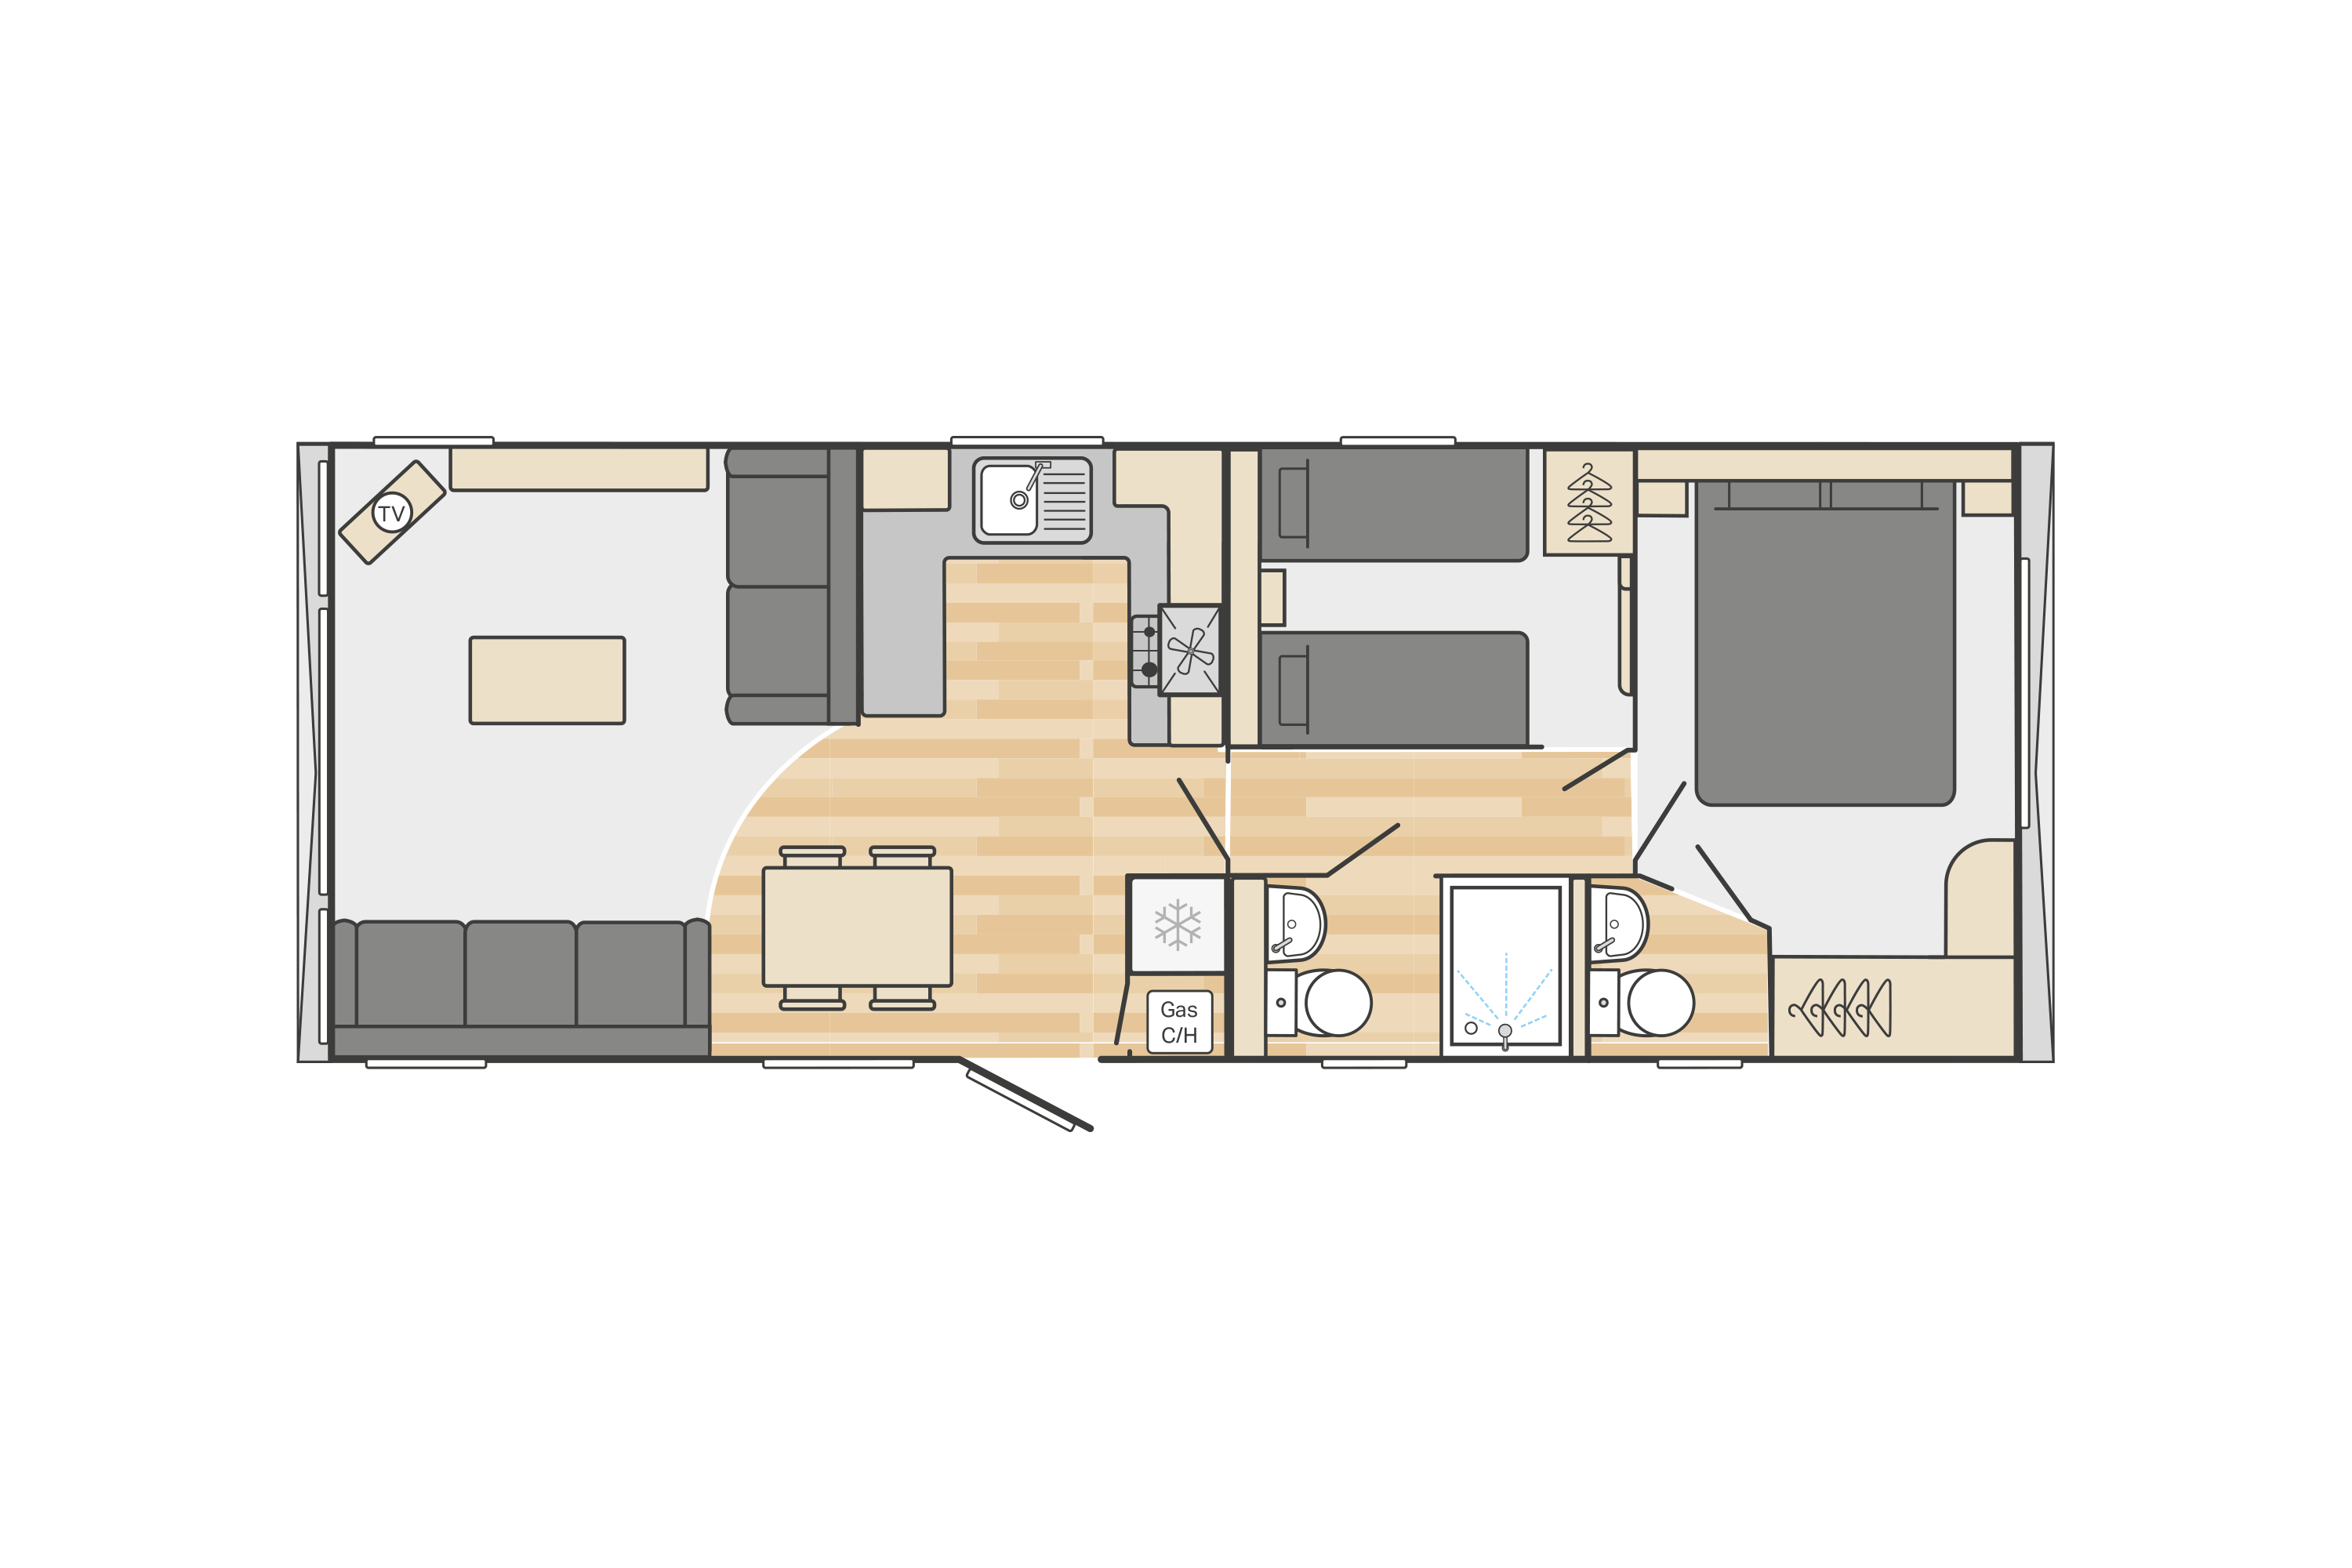 Bordeaux 33' x 12' 2 Bedroom floorplan